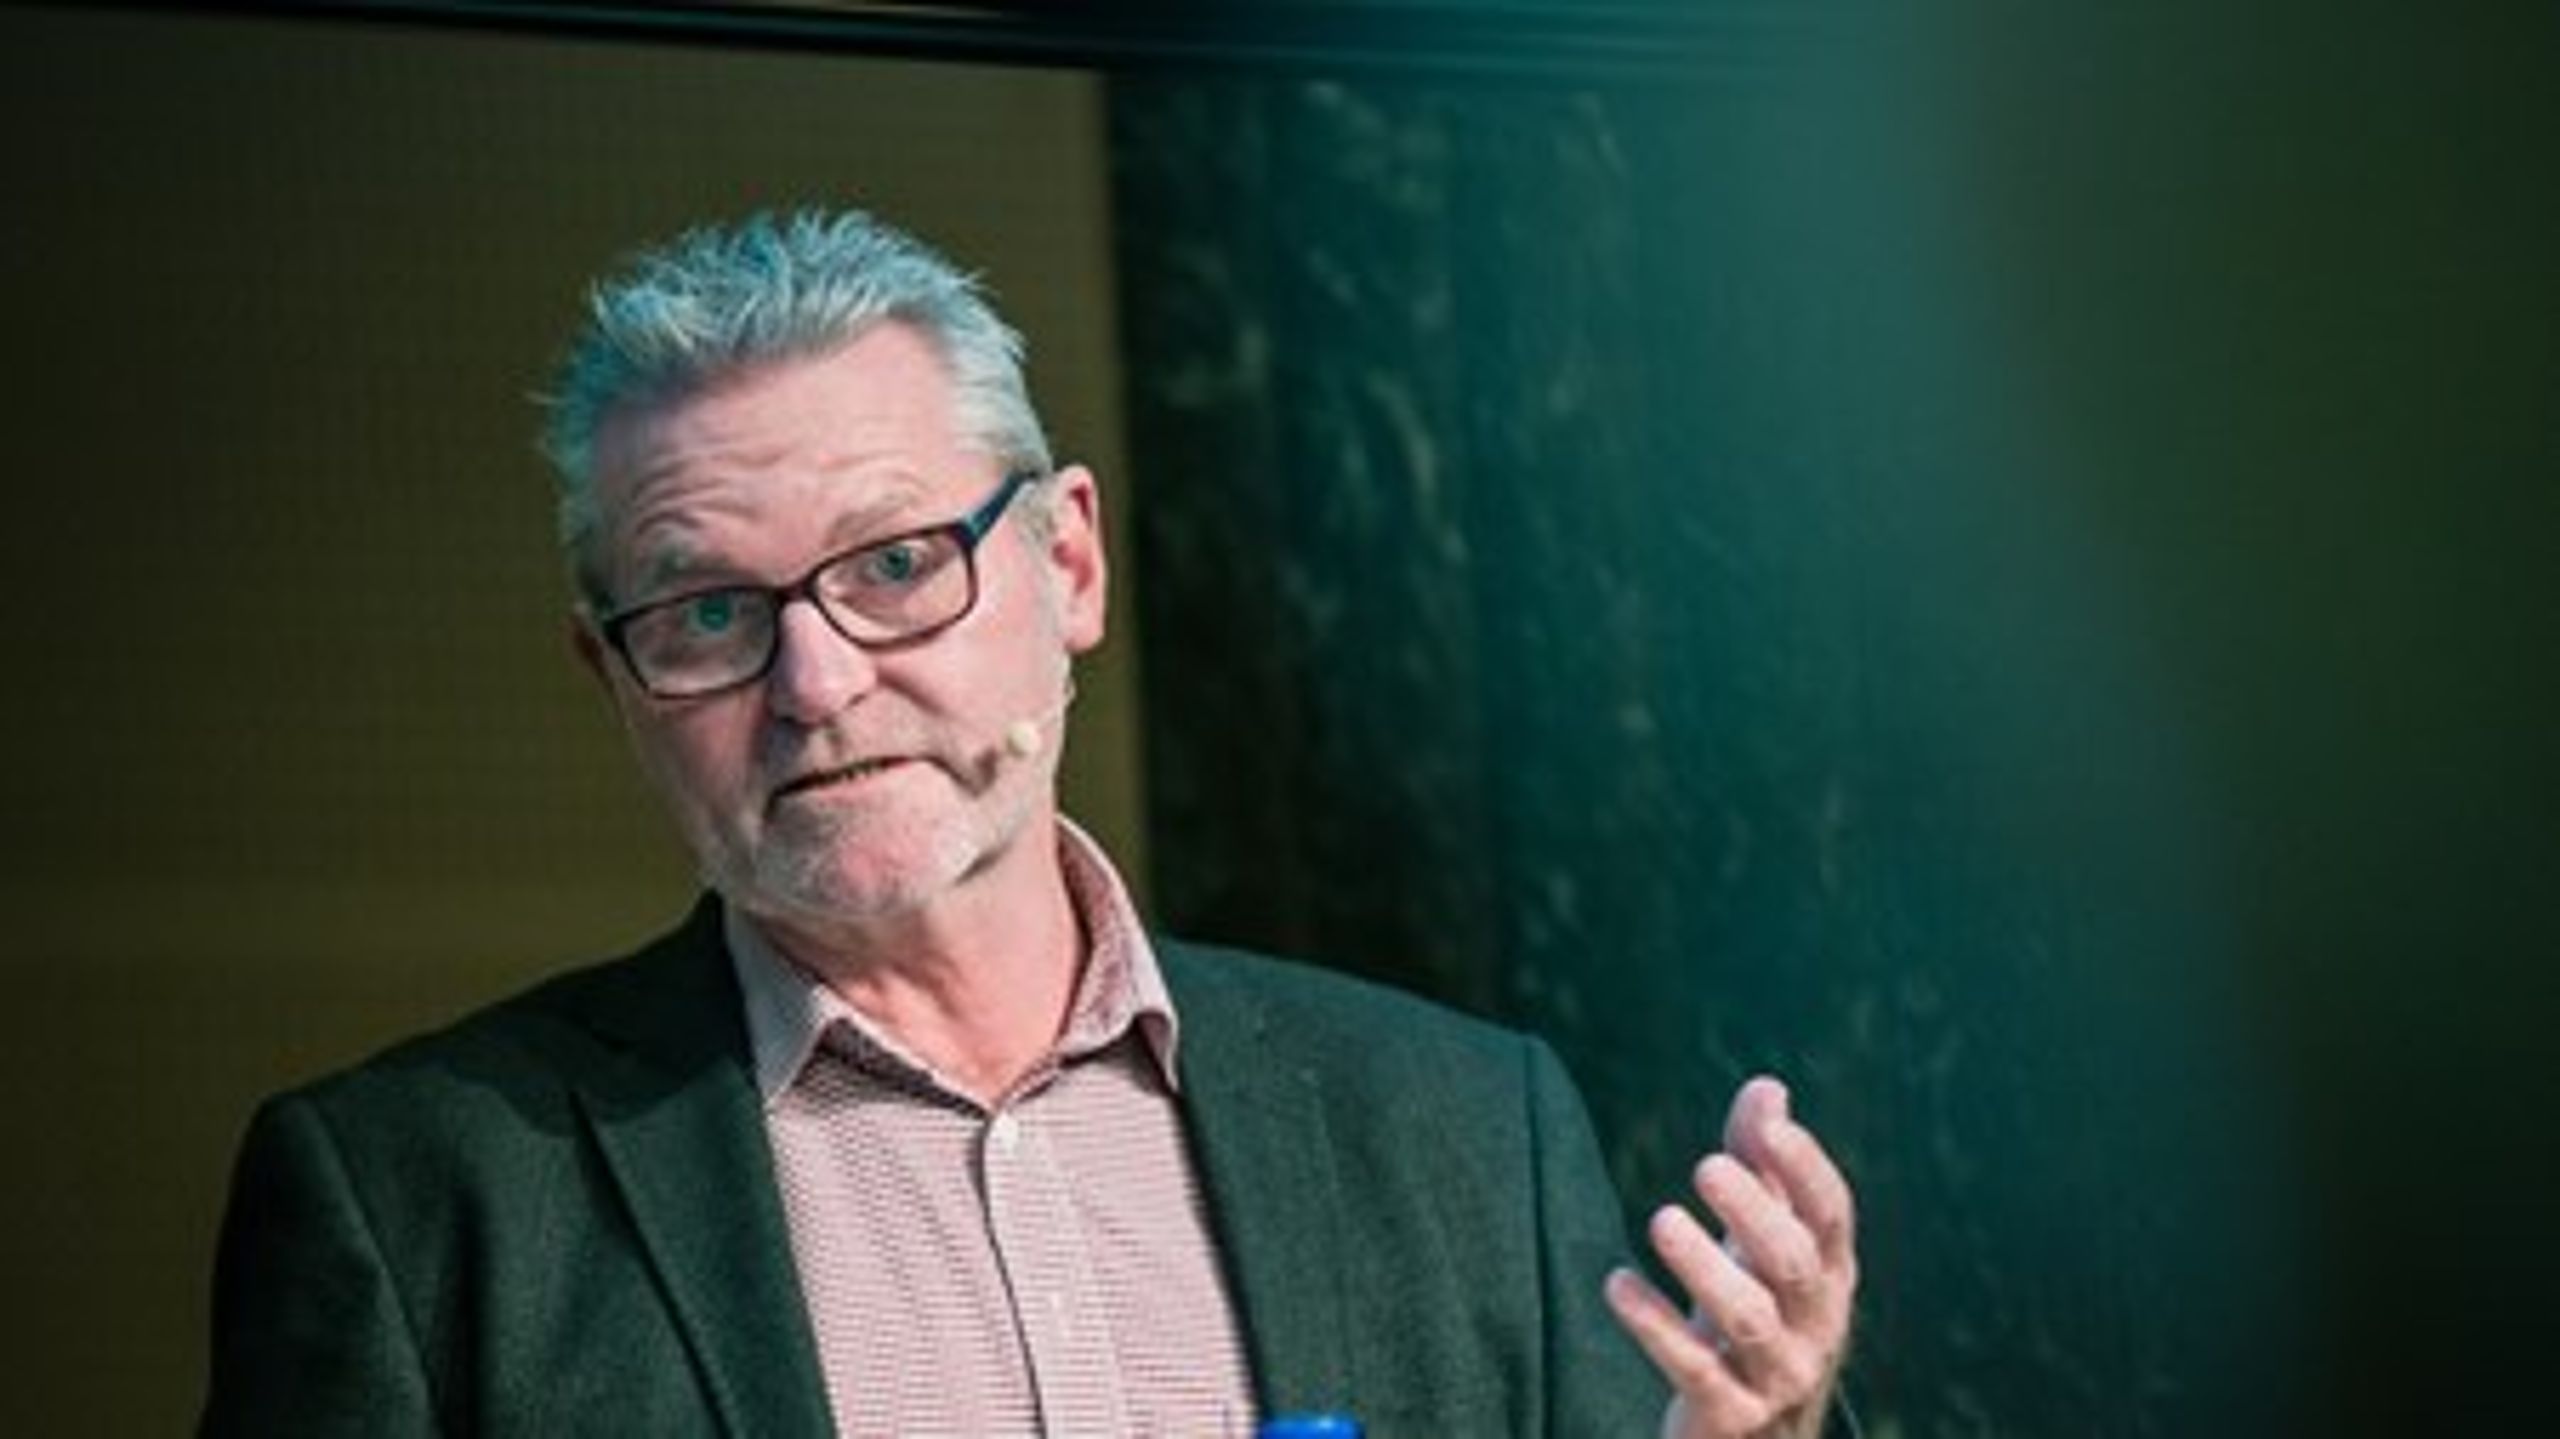 Socialdemokraternes boligordfører Jan Johansen kalder Dansk Folkepartis tilgang til <br>forhandlingerne om planloven for vrøvl. DF's ordfører mener, at Socialdemokraterne burde gå i dialog i stedet for at provokere. <br>